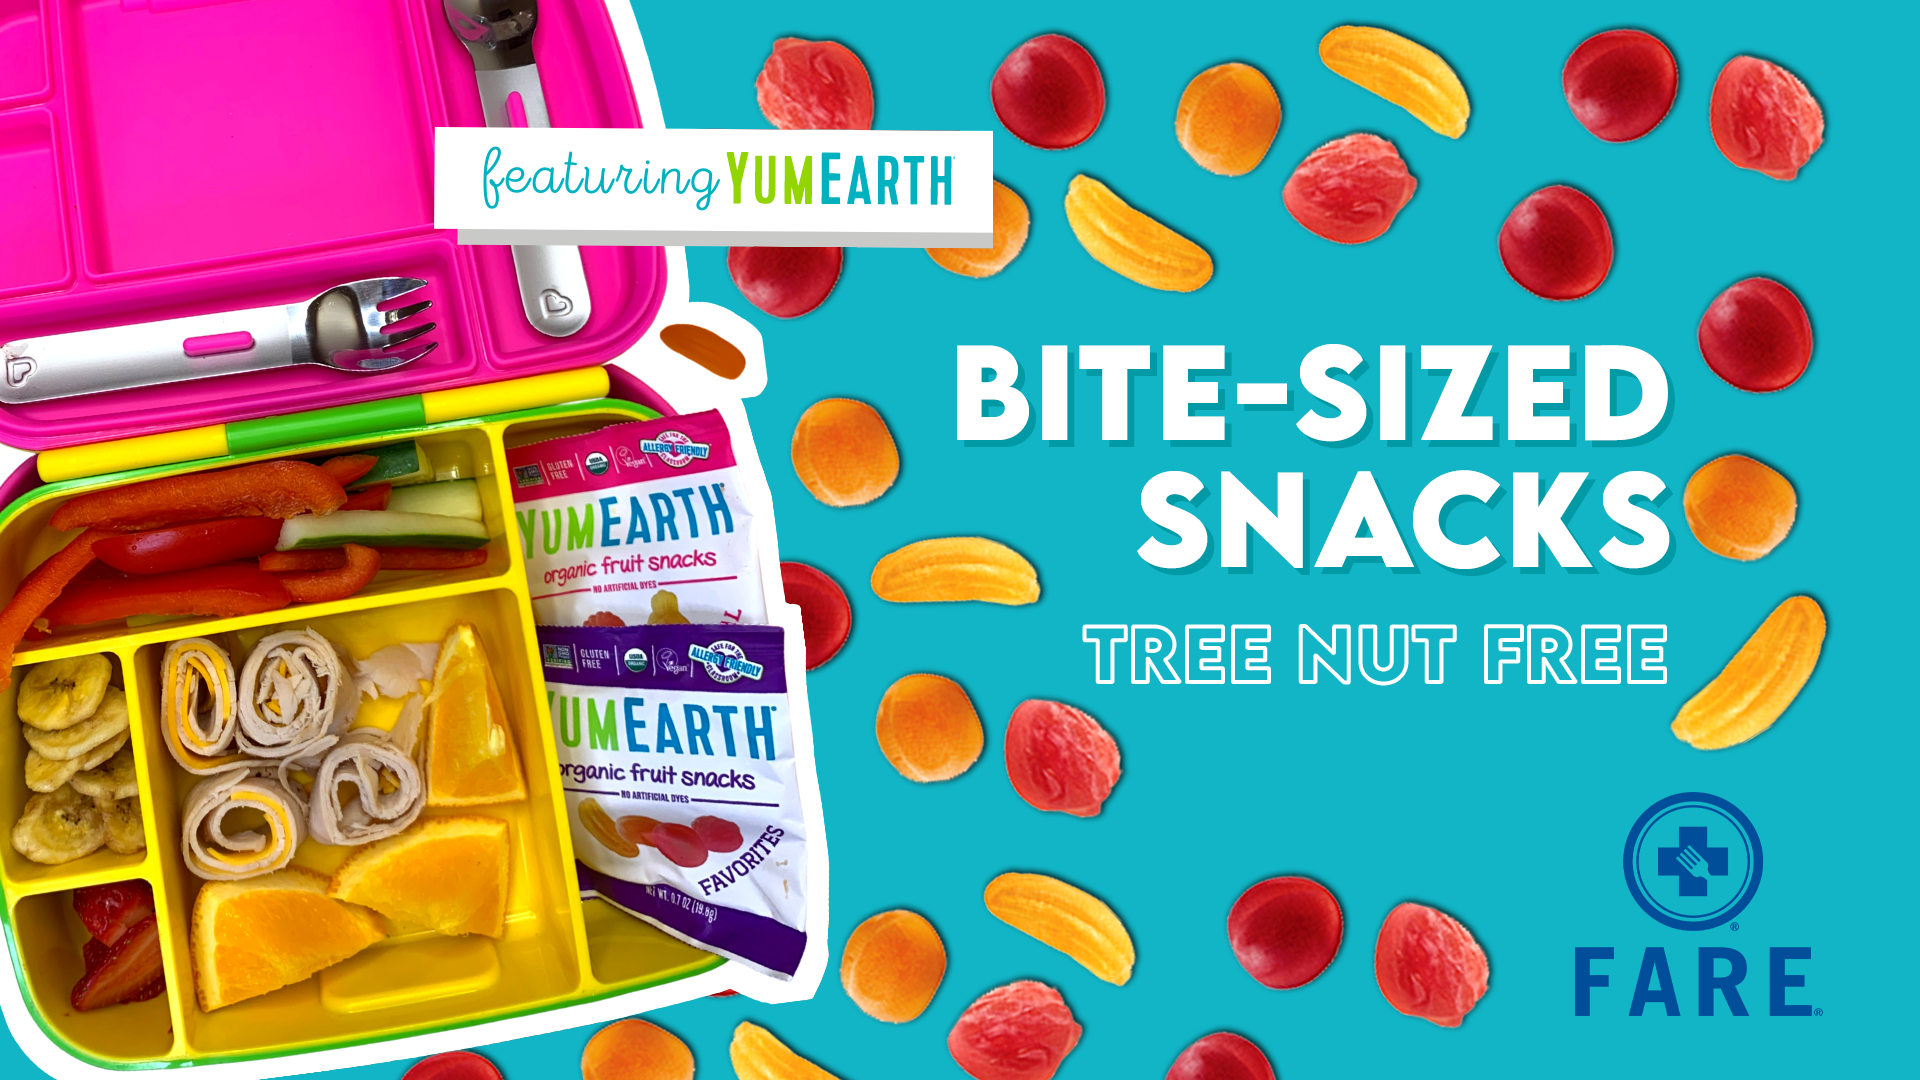 Tree-Nut-Free Bite-Sized Snacks